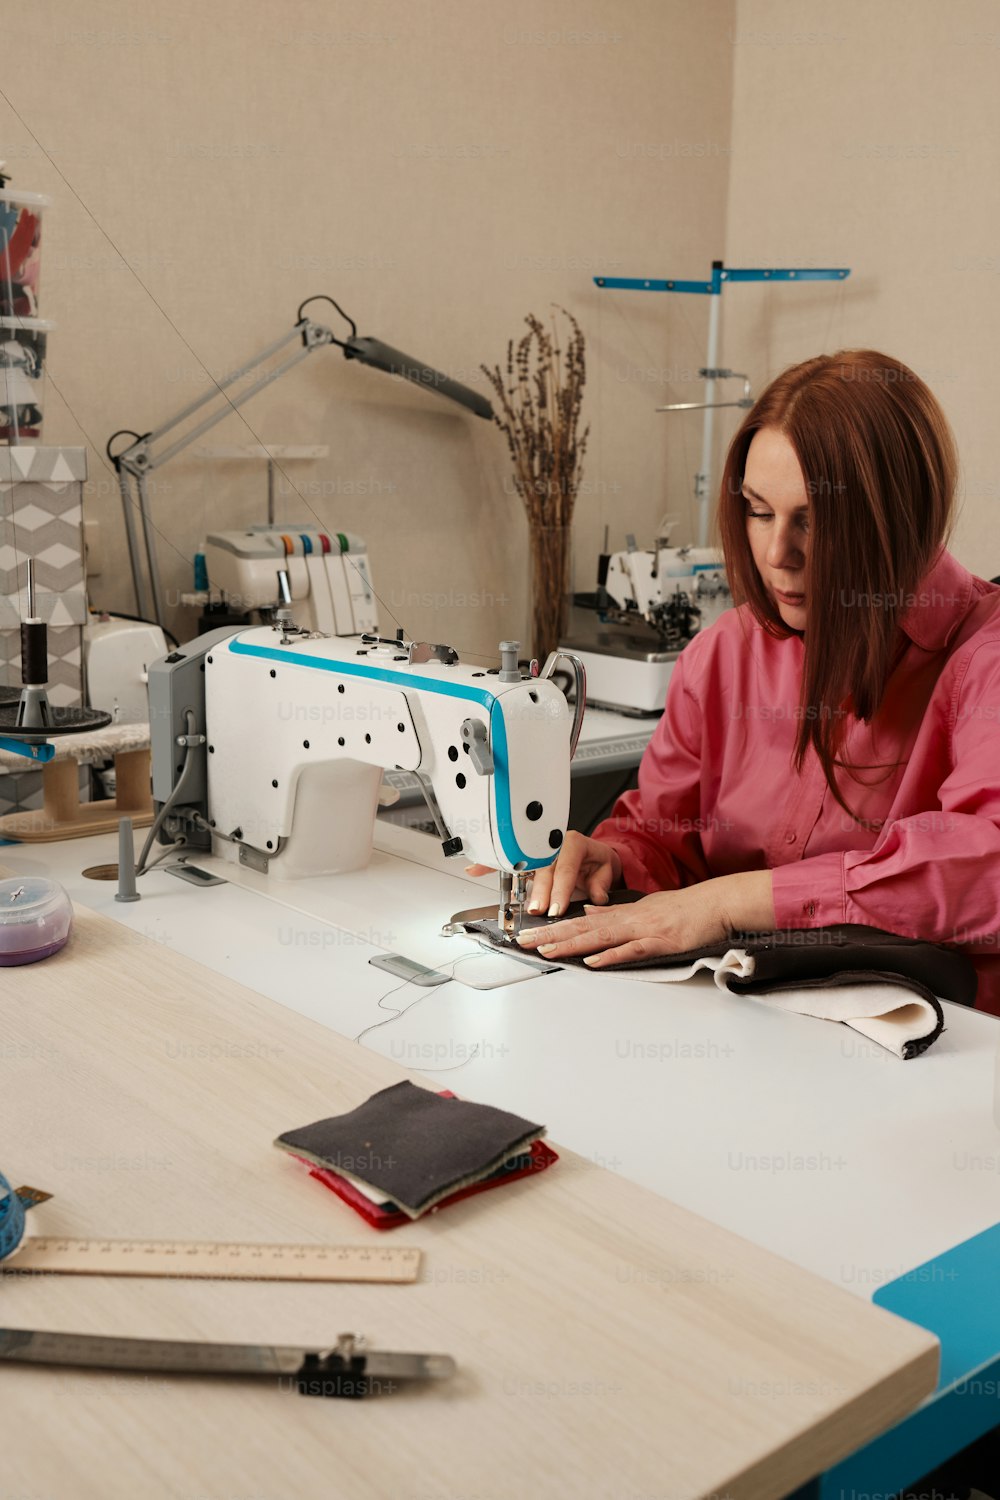 una donna seduta a una macchina da cucire che lavora su un pezzo di tessuto